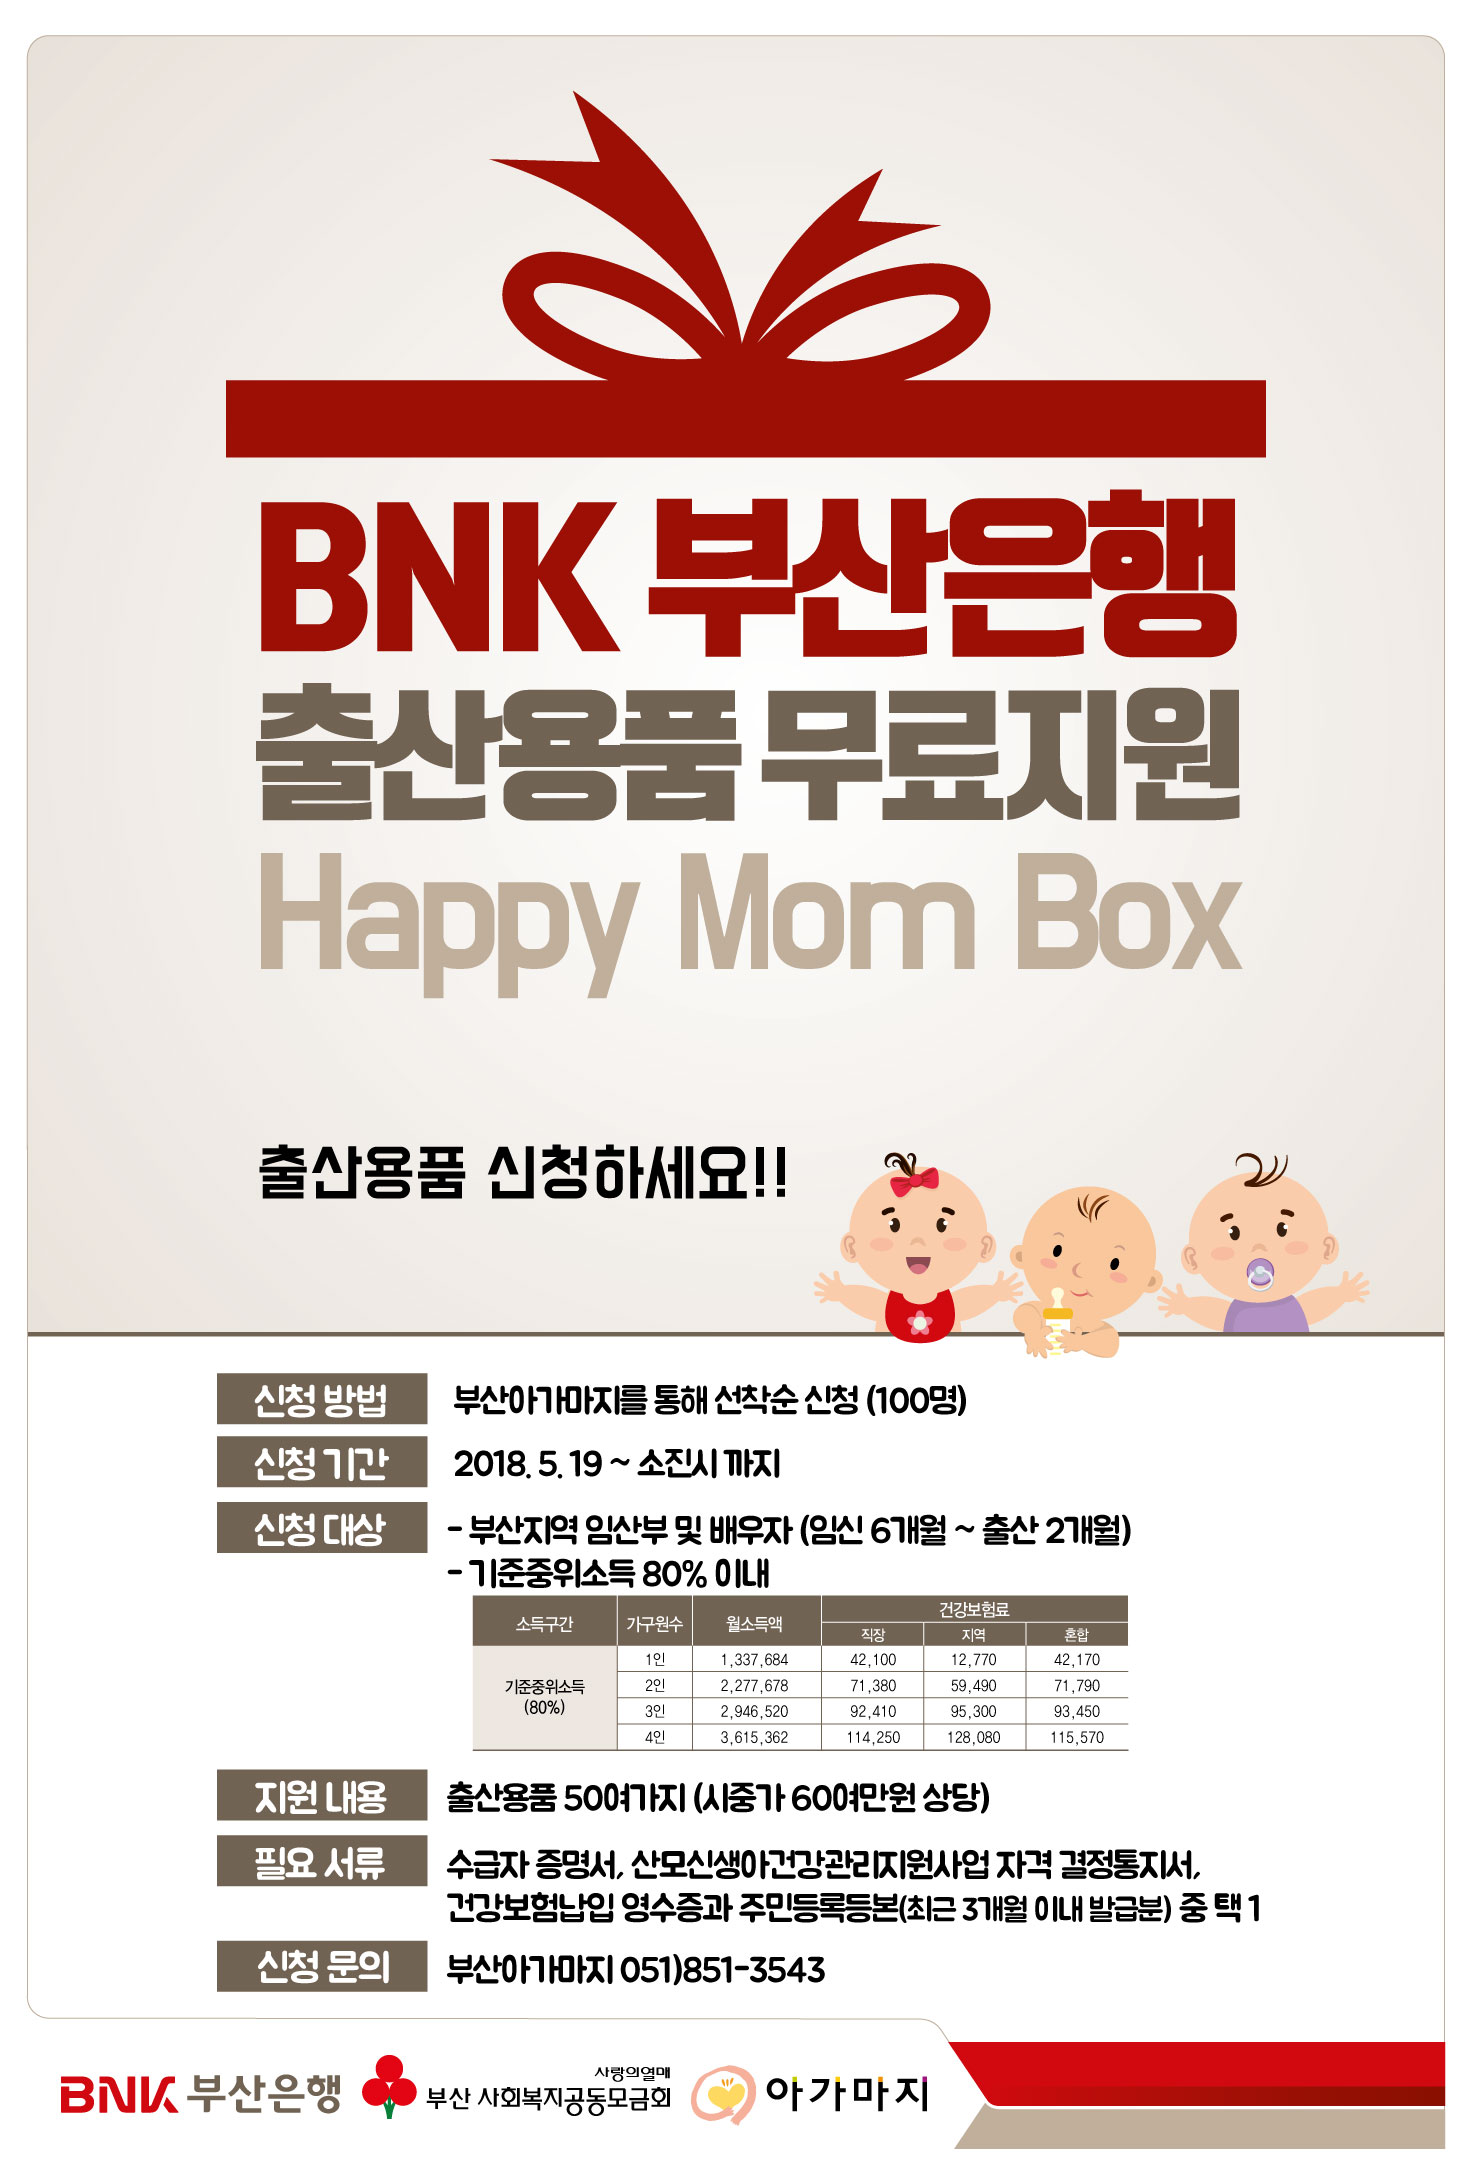 BNK 부산은행 출산용품 무료지원 -해피 맘 박스- 홍보 안내